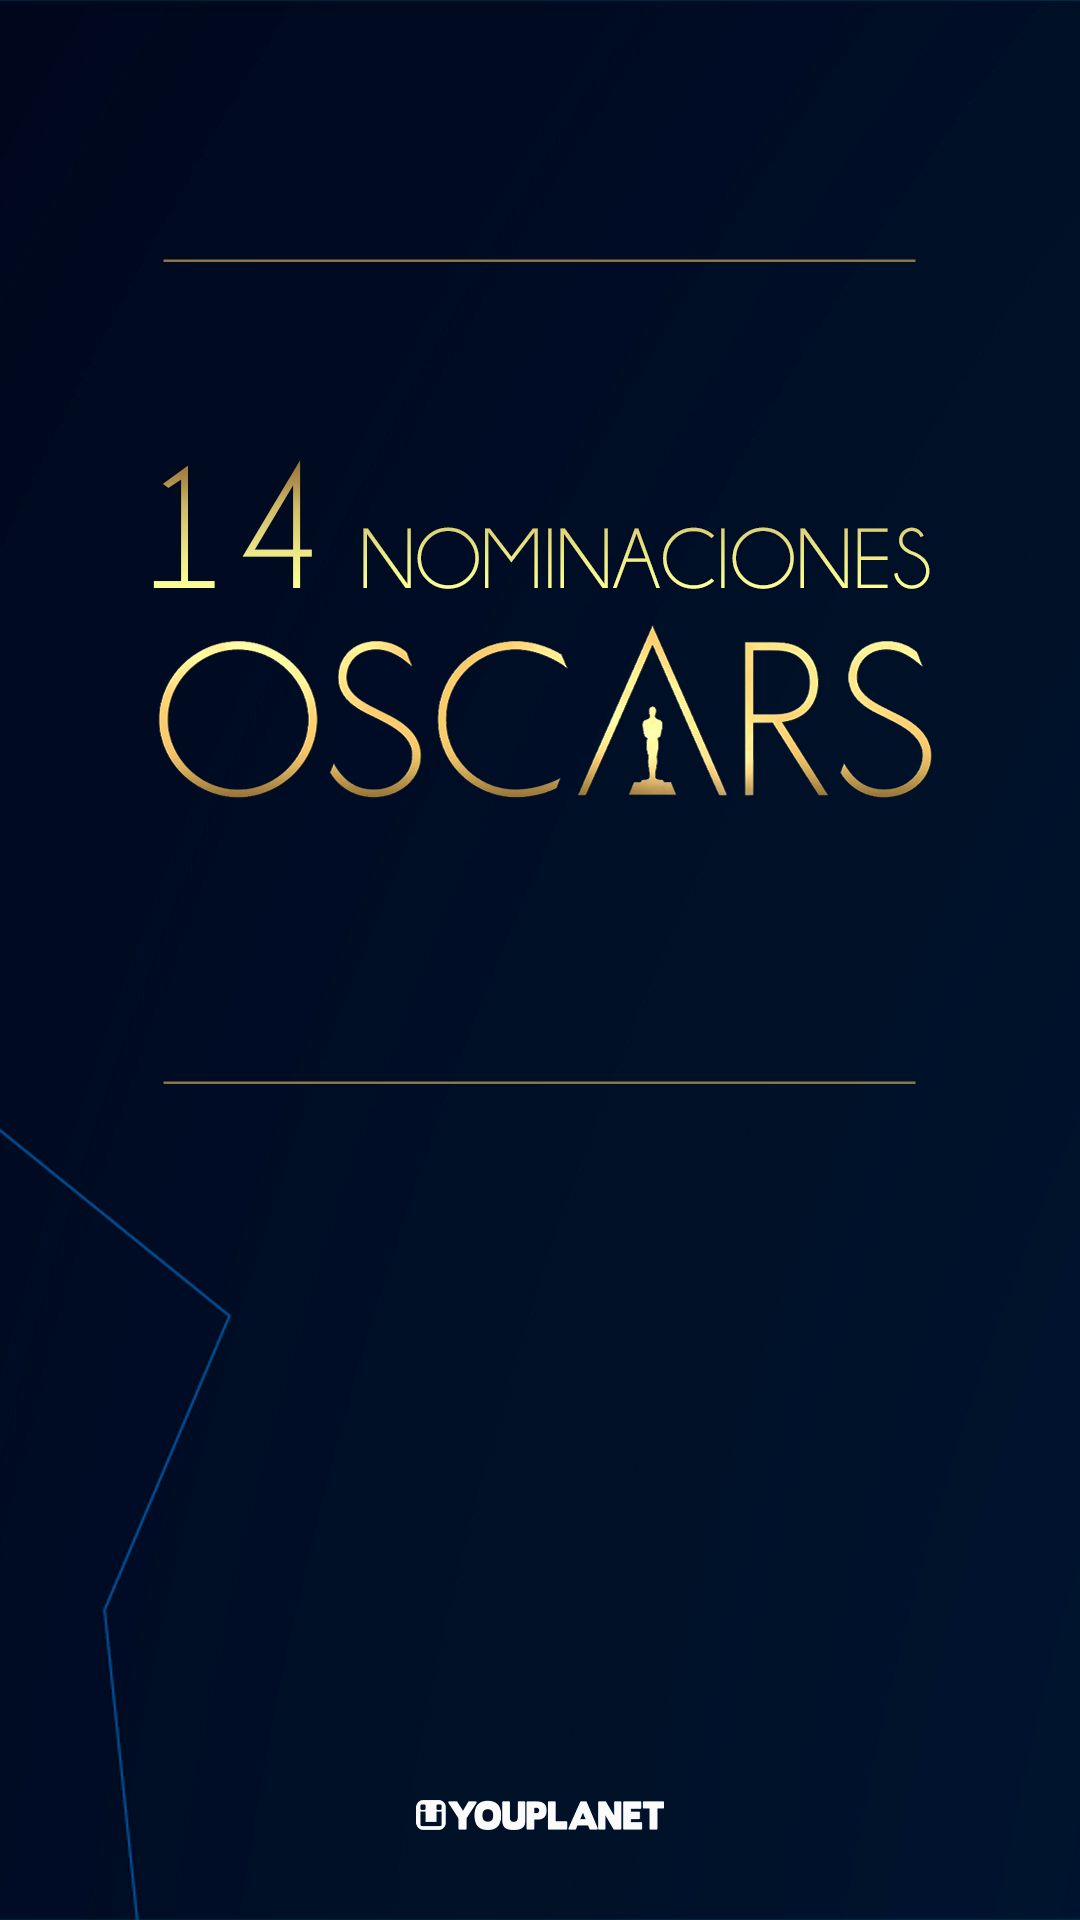 YouPlanet Pictures suma 14 nominaciones a los Oscar